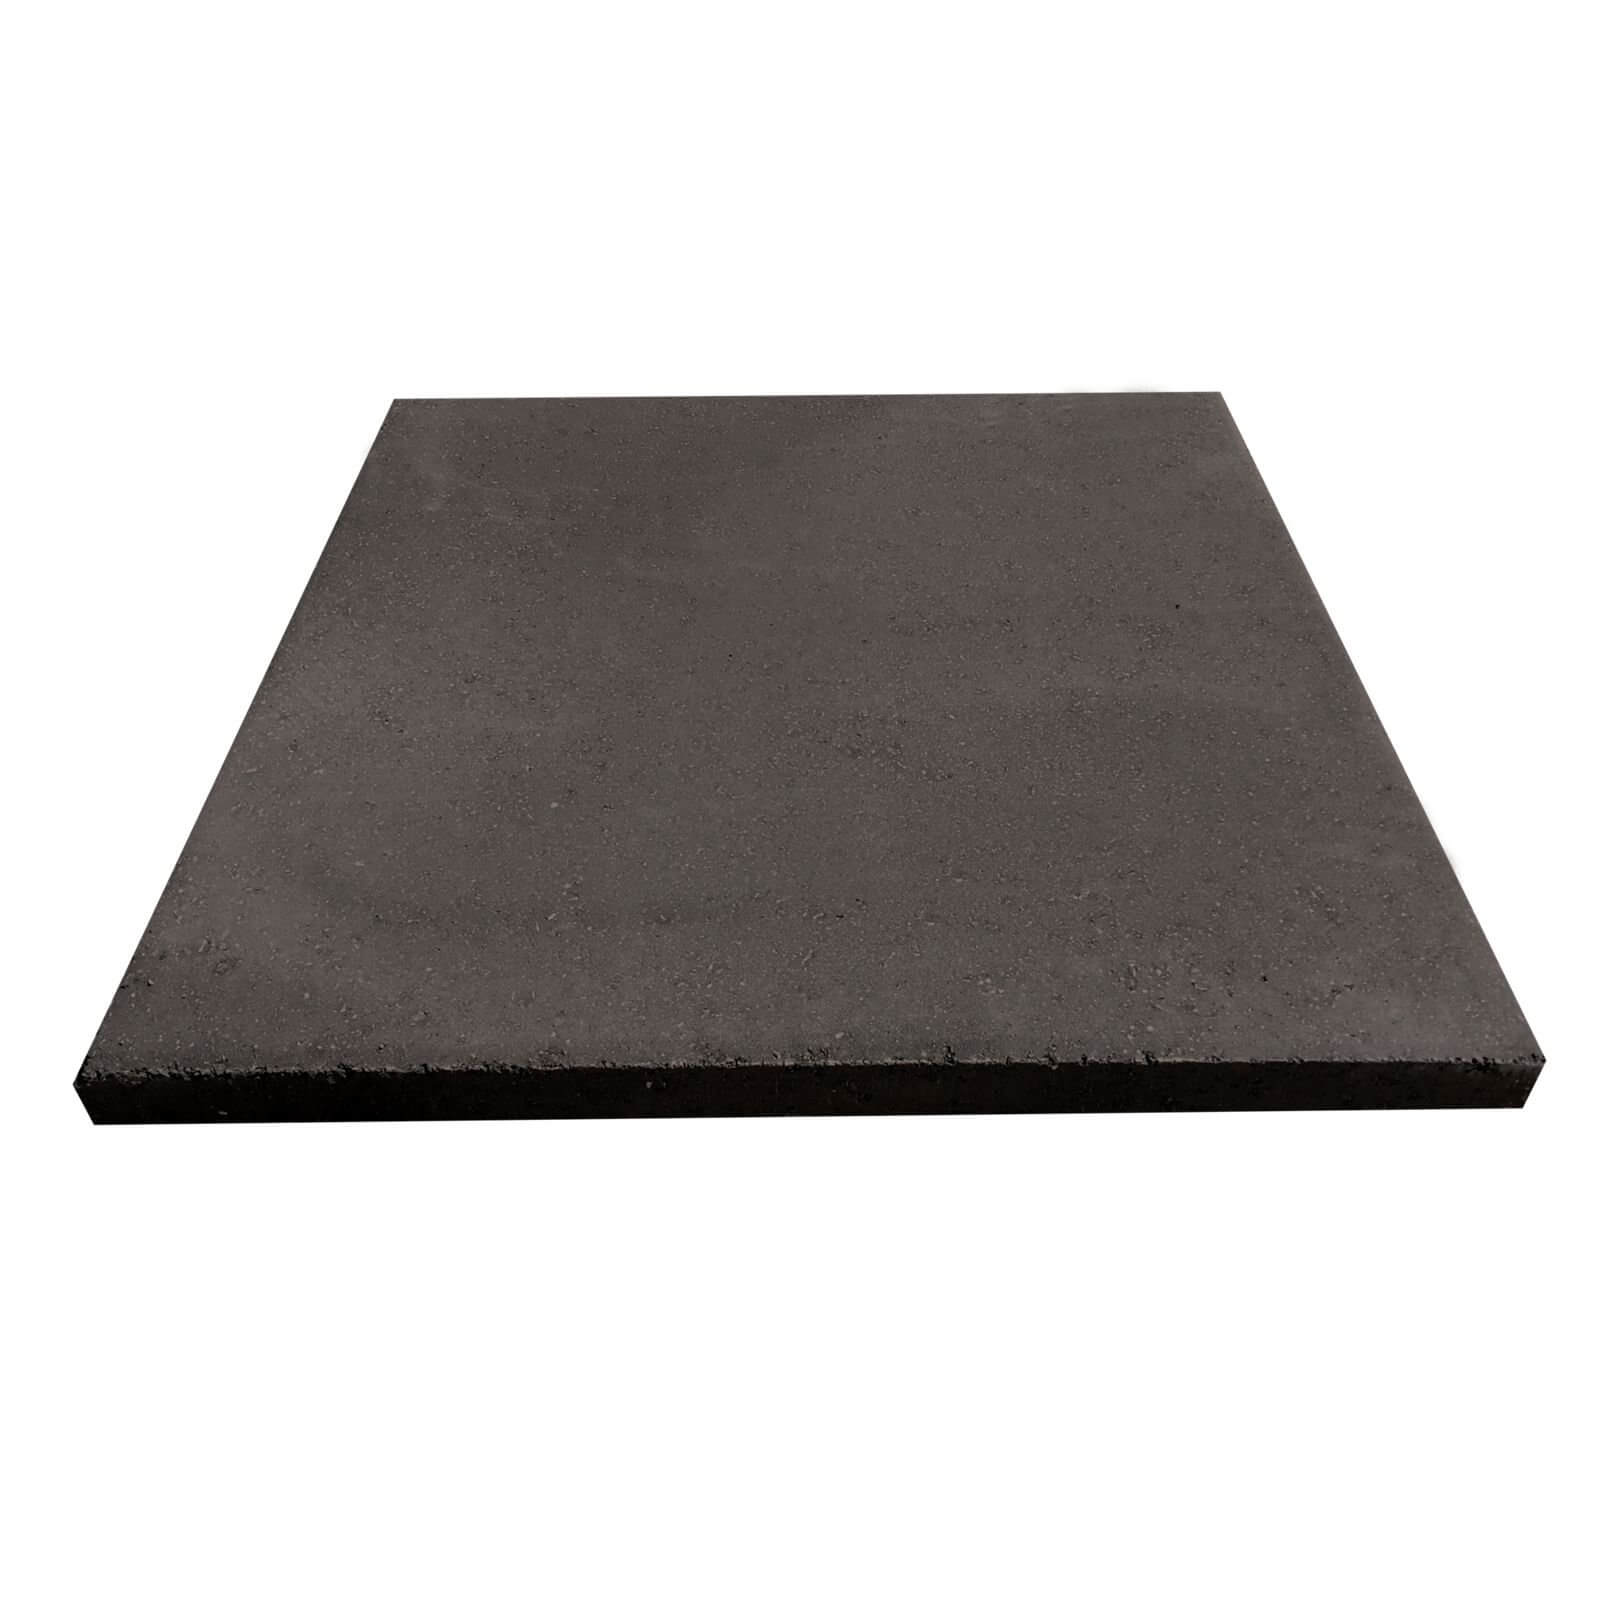 Stylish Stone Horsham Paving 450 x 450mm - Charcoal (Full Pack)